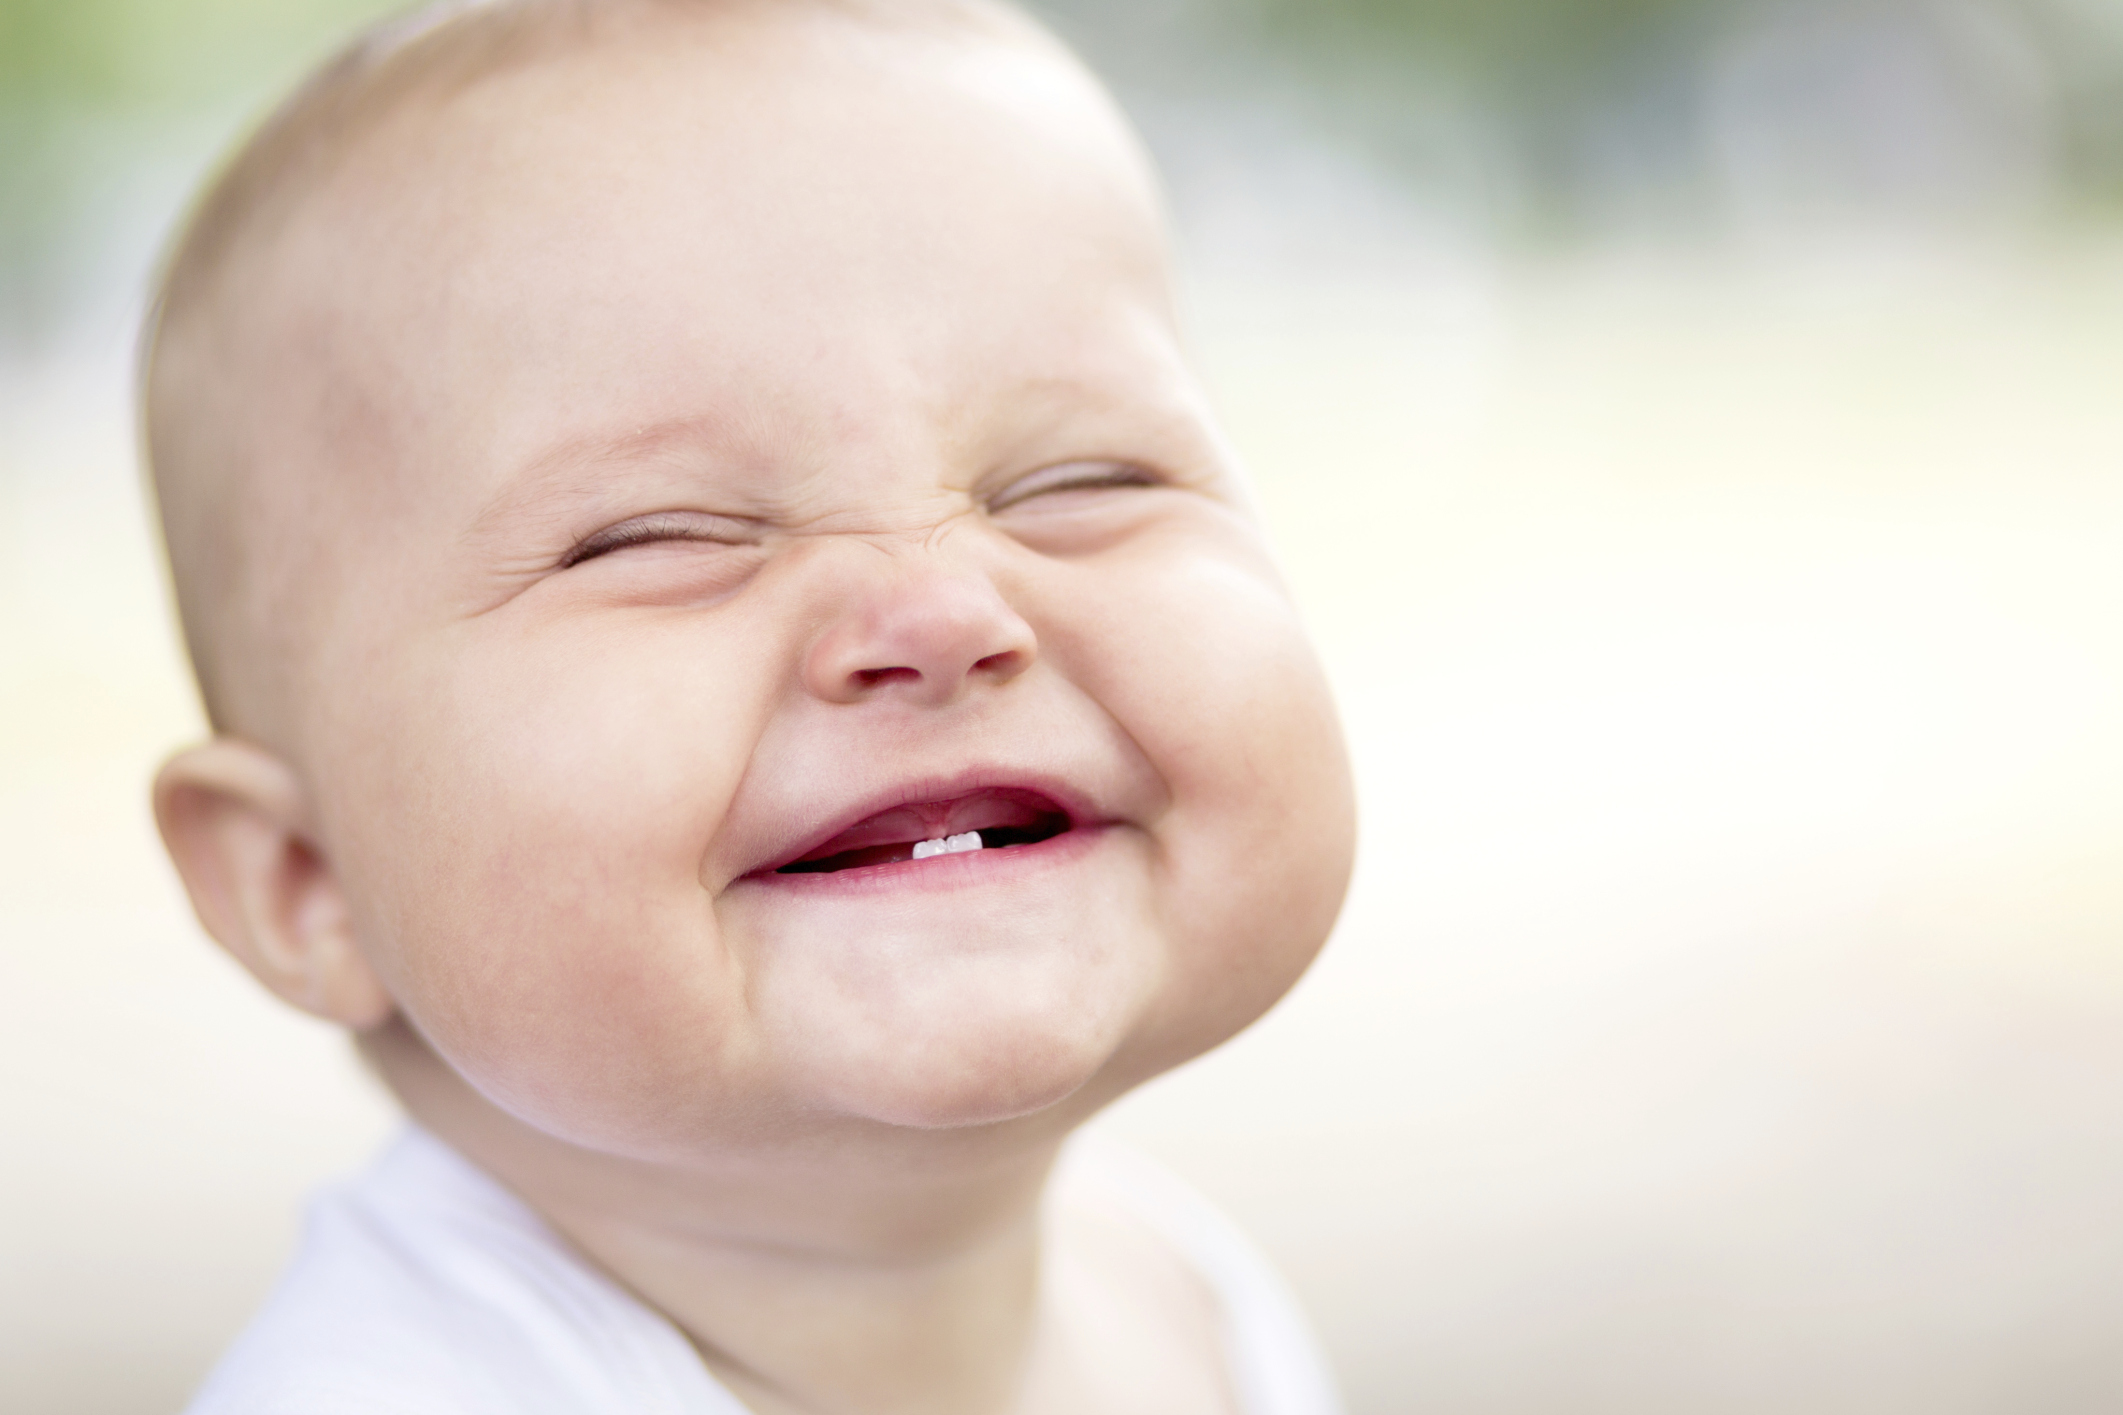 baby-teeth-smiling.jpg